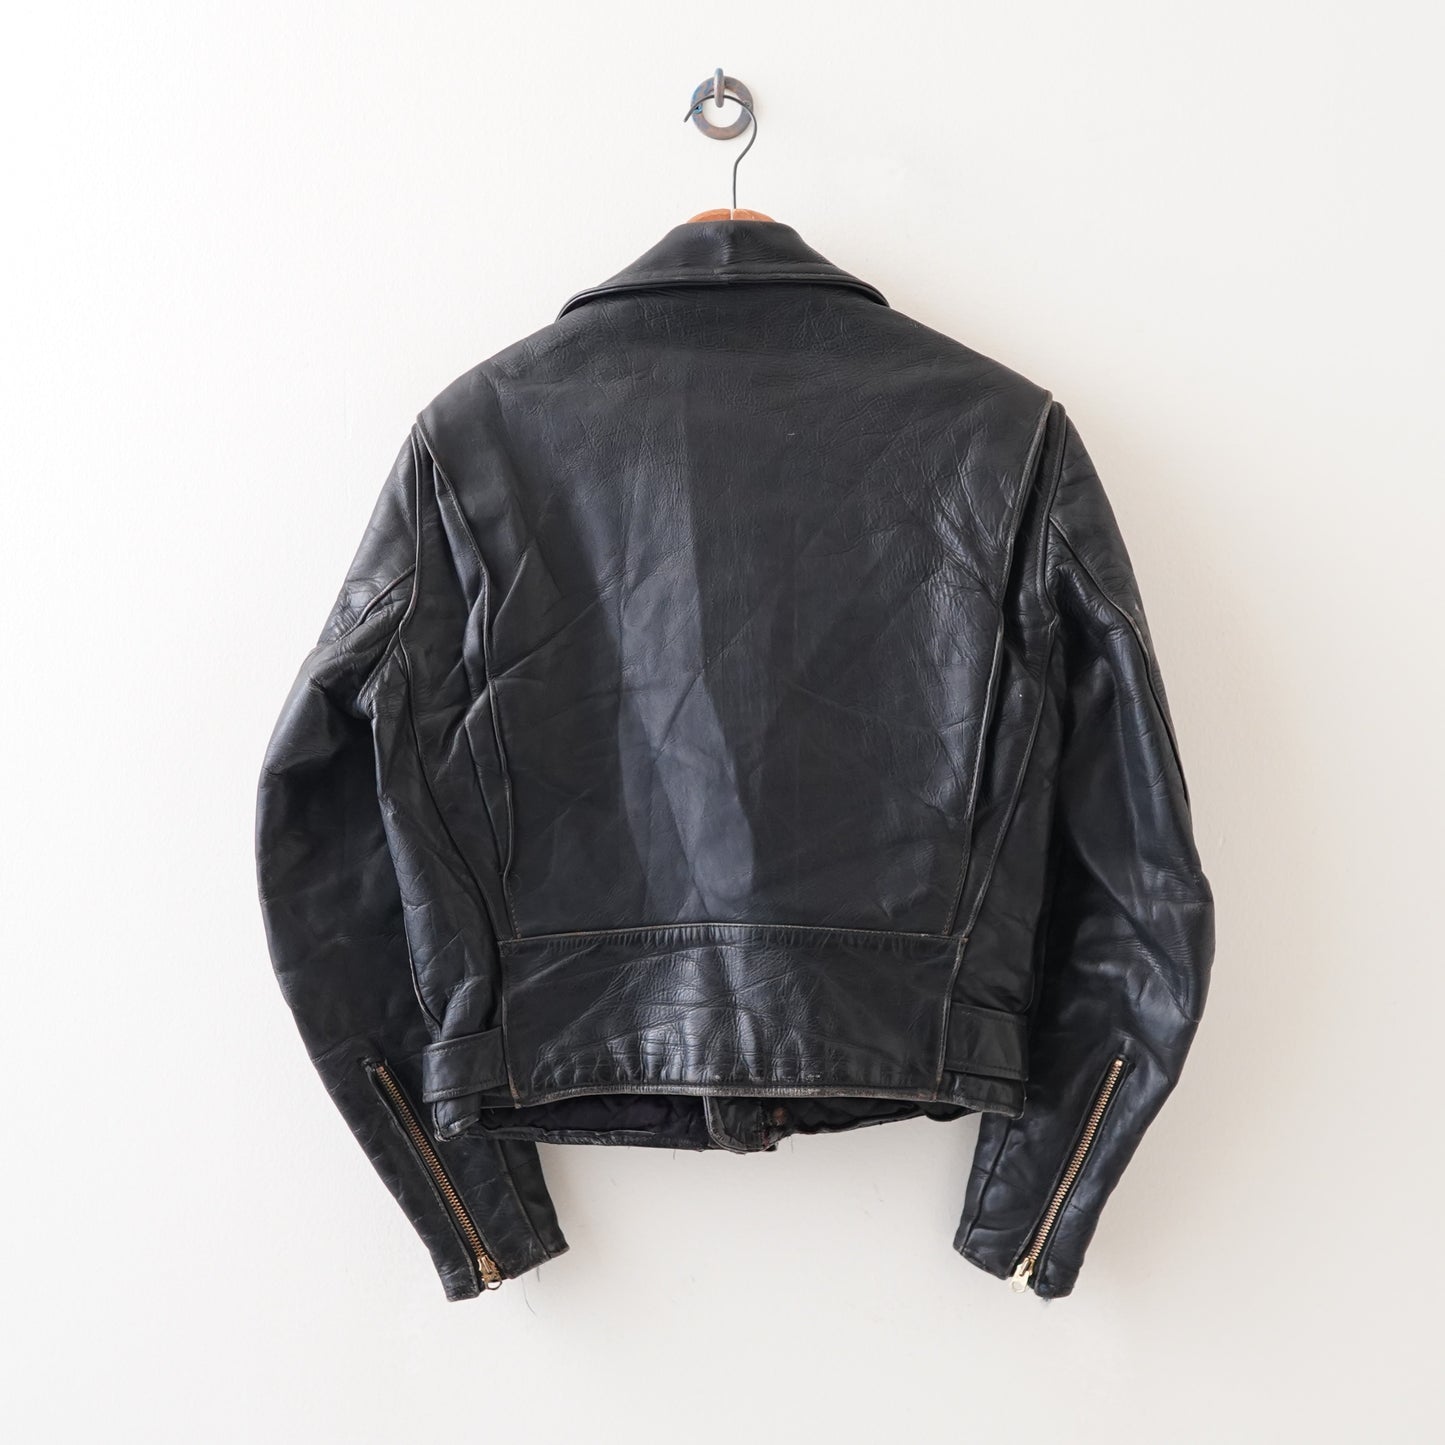 70s leather jacket